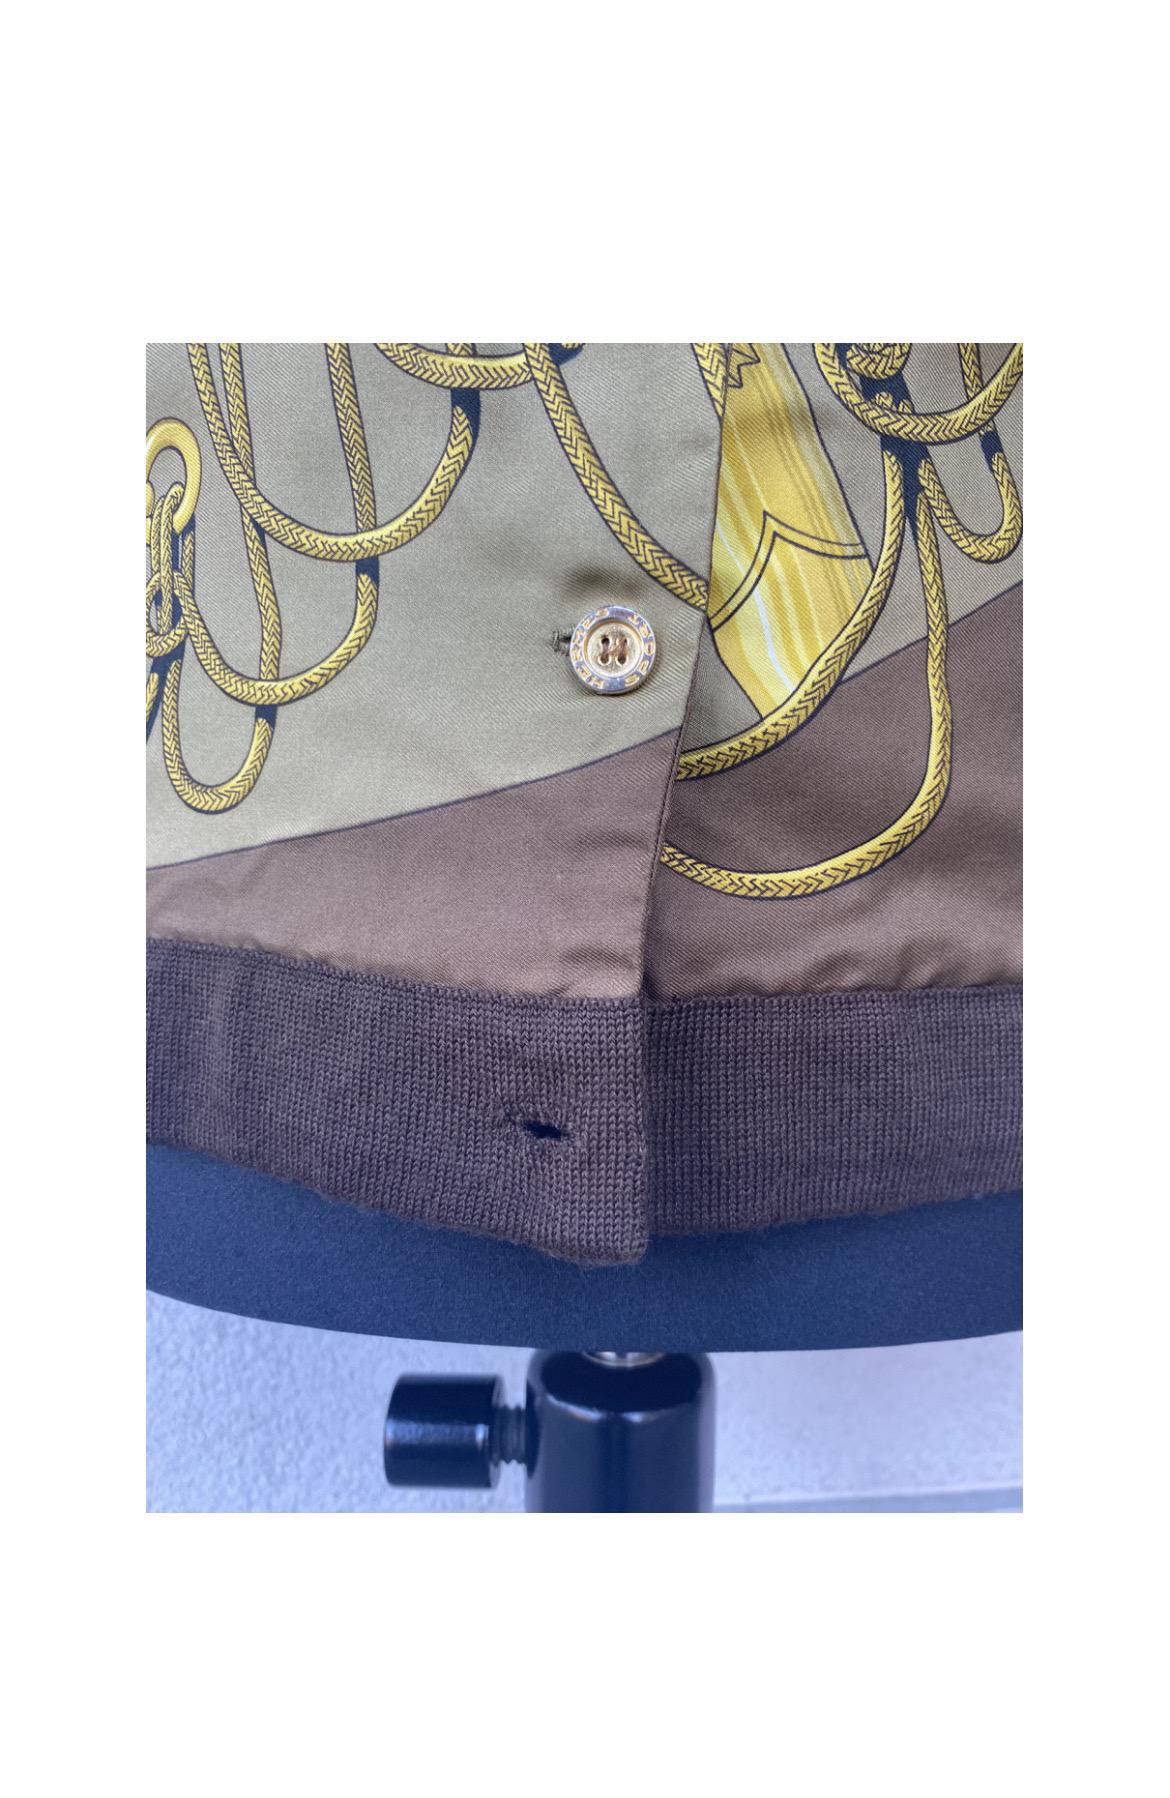 Cardigan Hermès taille M, en mélange de cachemire et de soie, avec boutons dorés à logo, malheureusement il en manque un (le dernier en bas), mesures : 
manche 63 cm, 
poitrine 42 cm, 
longueur 64 cm, 
épaule 38 cm, 
en bon état.